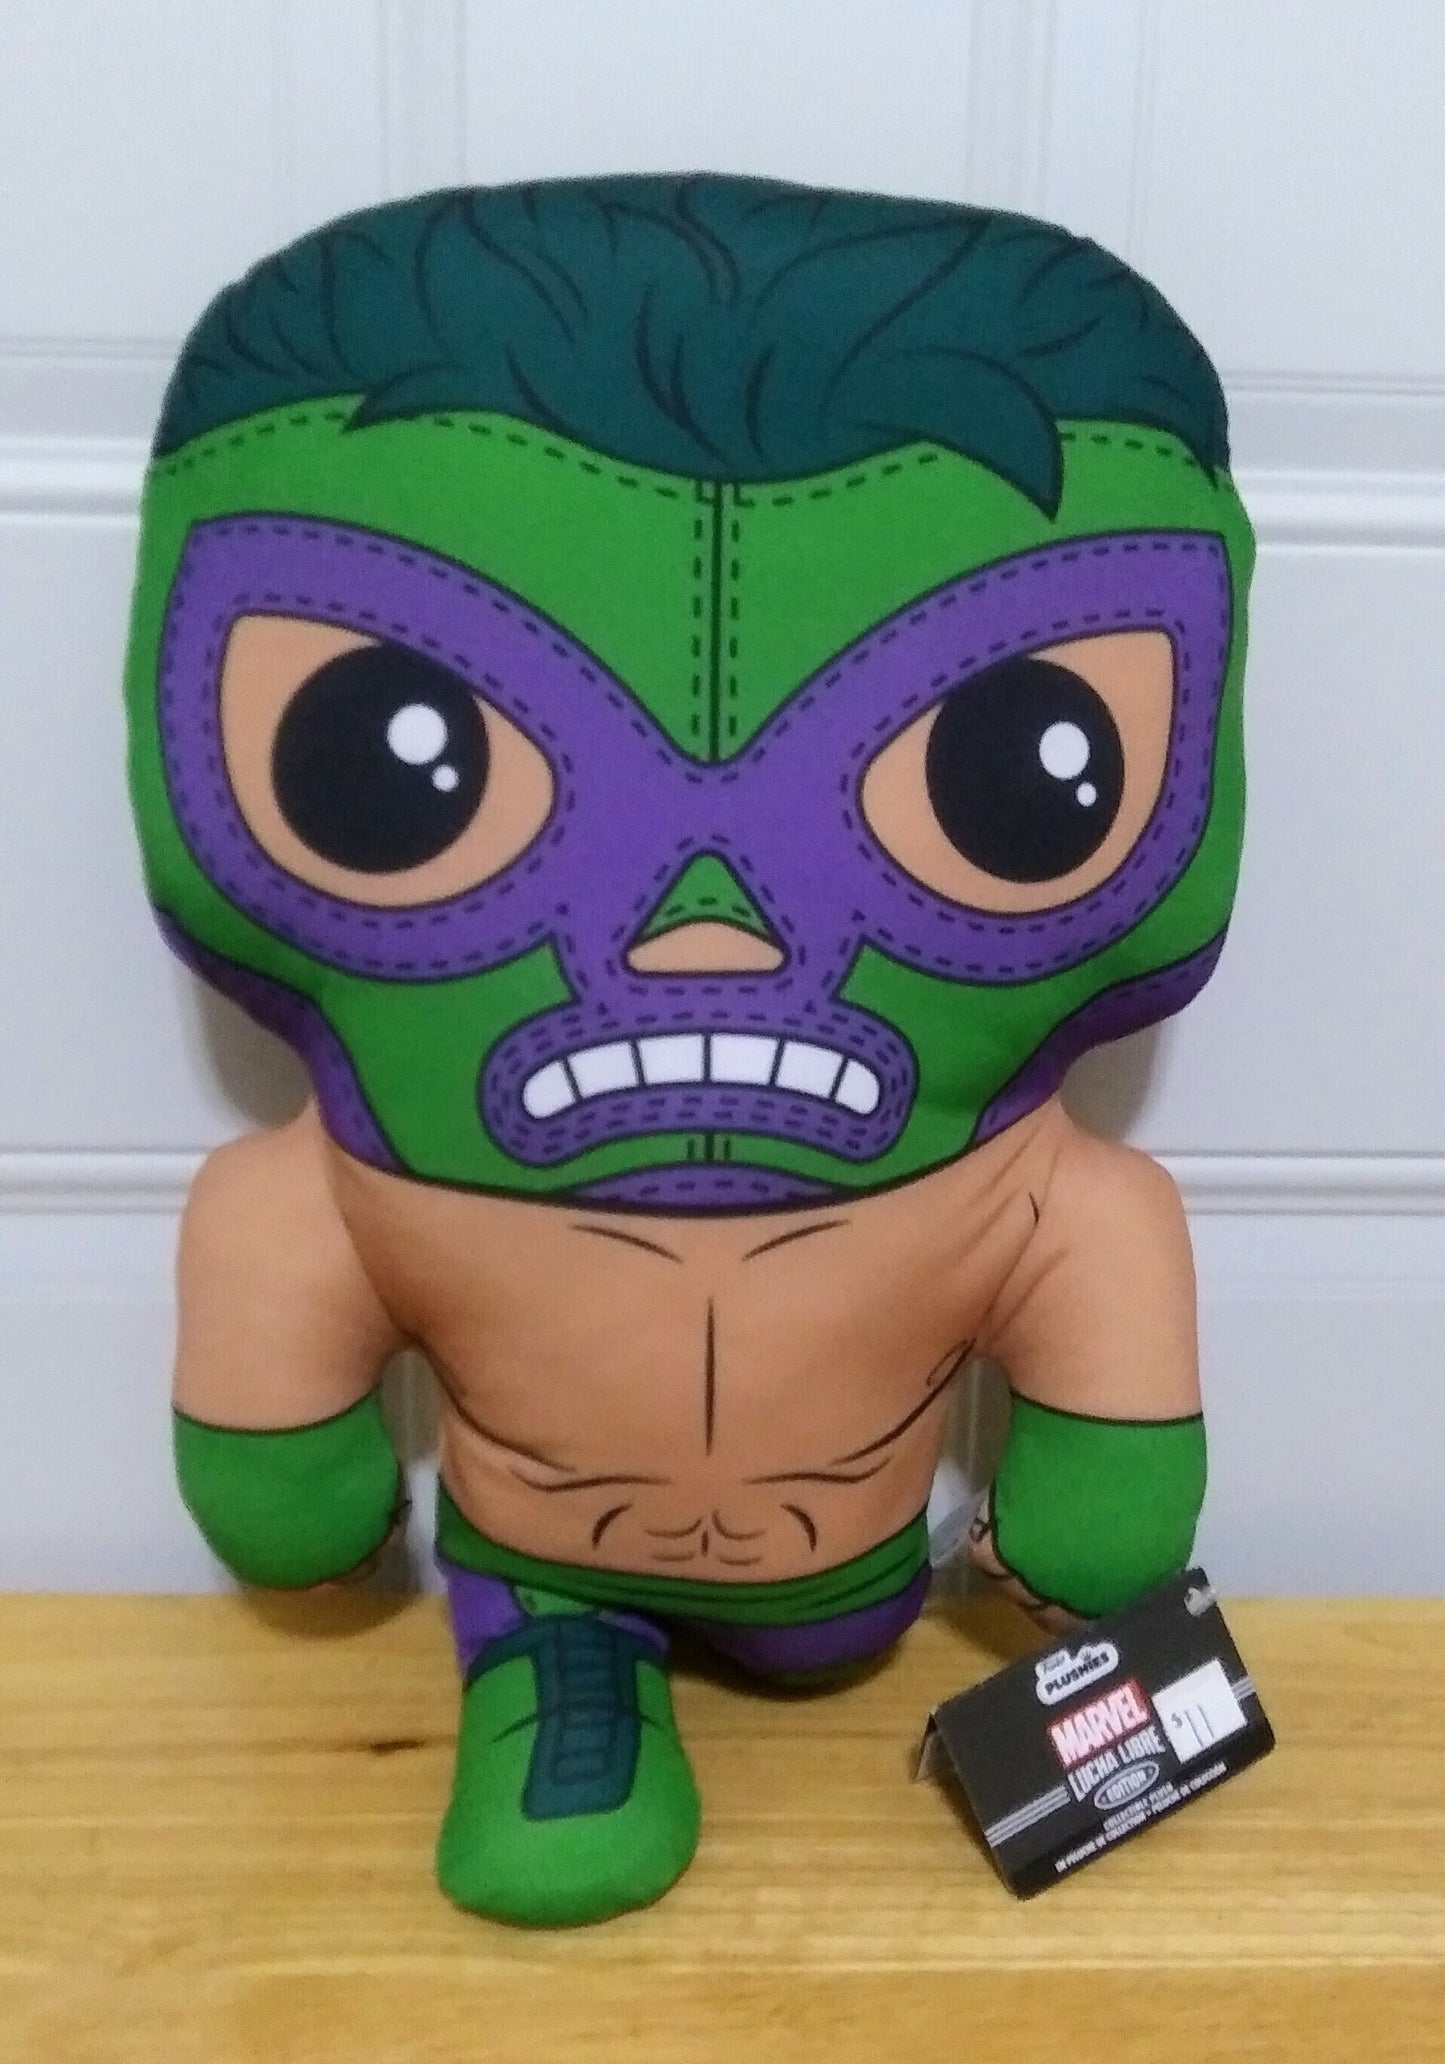 Marvel Lucha Libre Funko Plush - Hulk